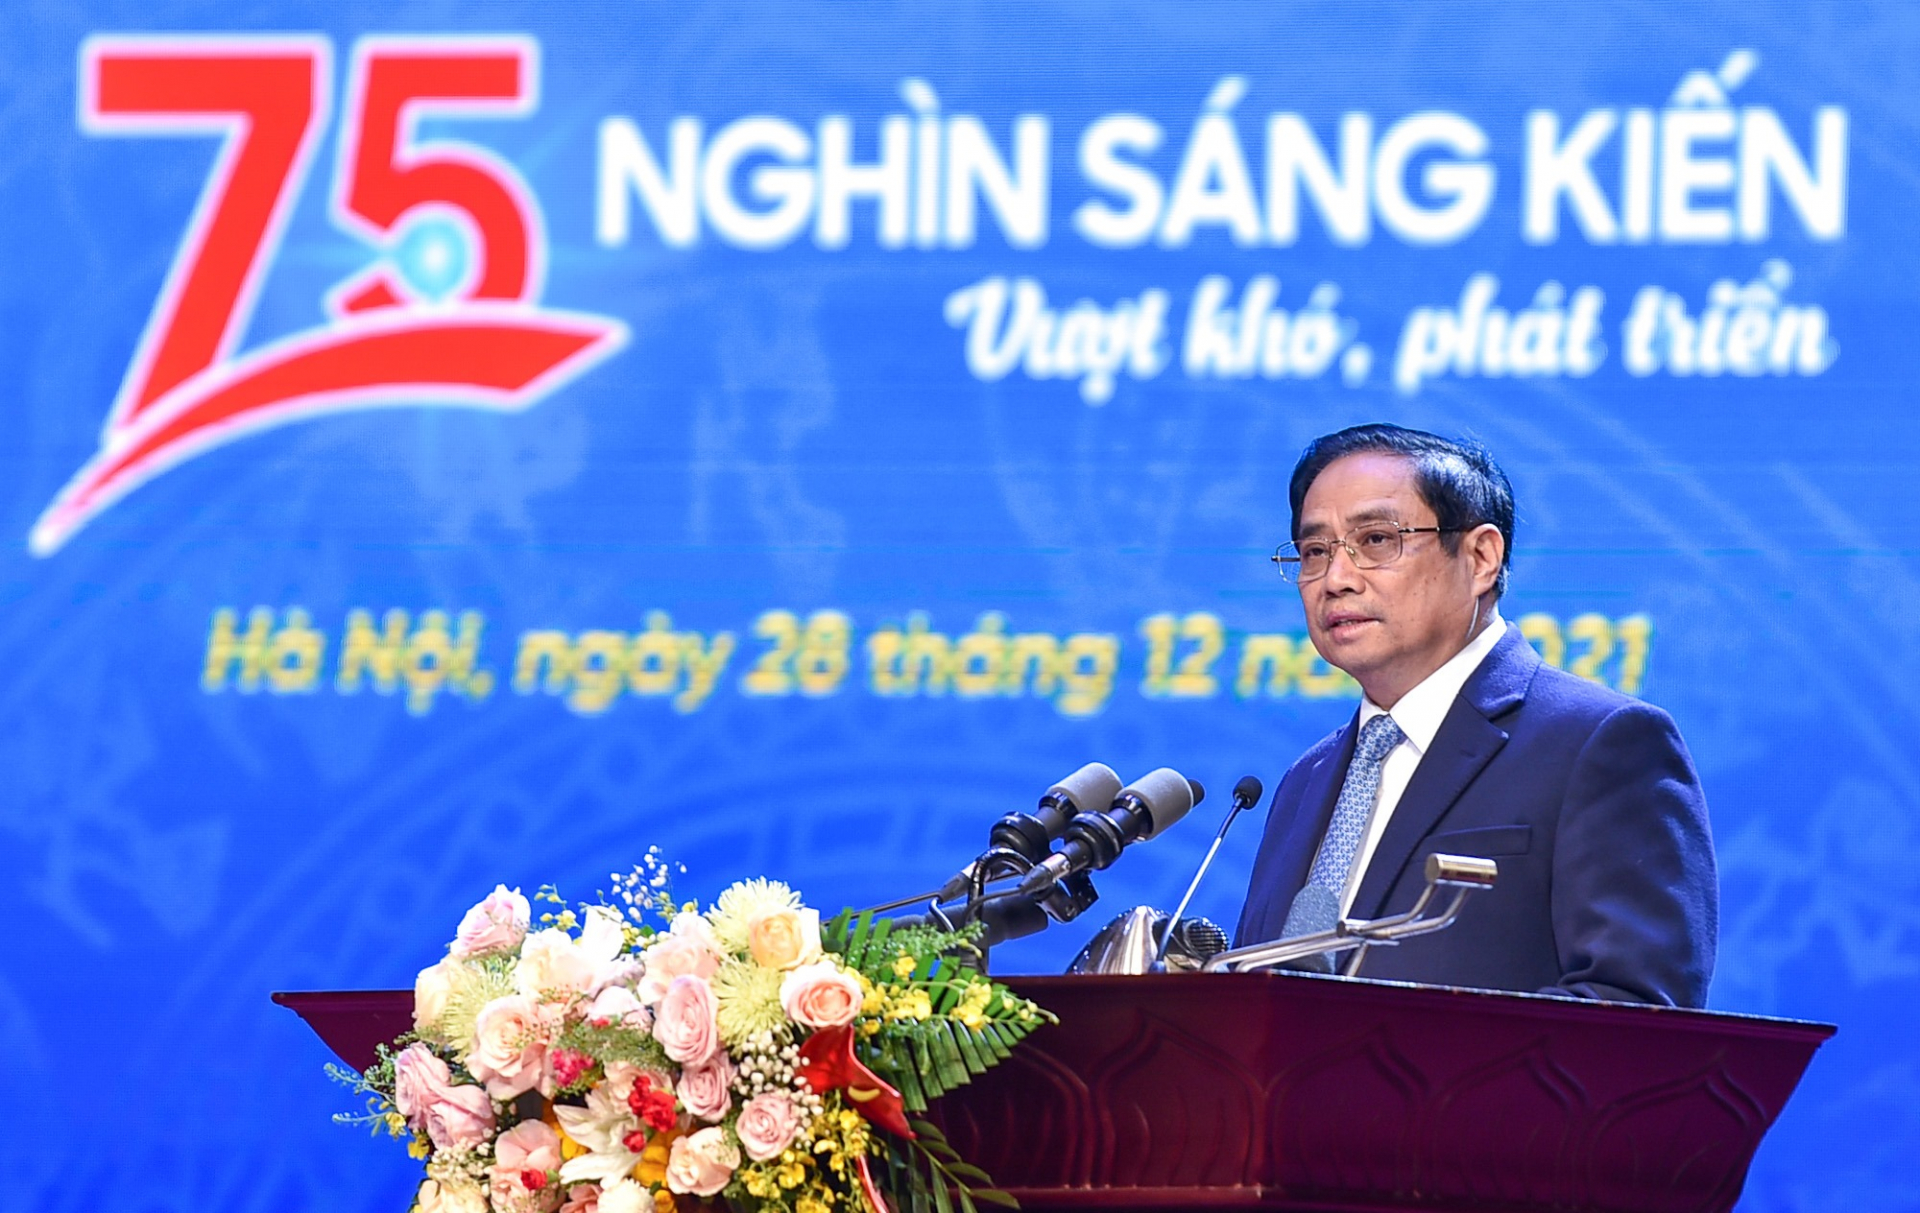 Thủ tướng Phạm Minh Chính: Đảng và Nhà nước ta luôn luôn nâng niu, coi trọng sáng kiến, kinh nghiệm của mọi tầng lớp nhân dân, nhất là sáng kiến, kinh nghiệm từ những người lao động